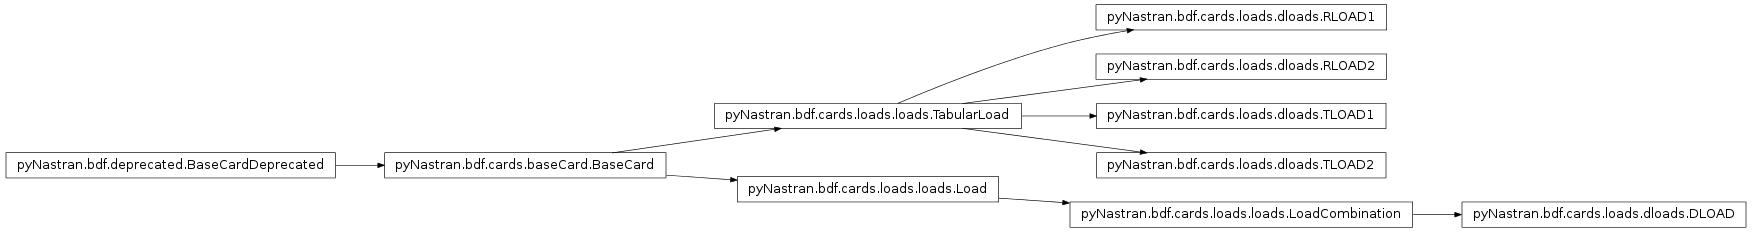 Inheritance diagram of pyNastran.bdf.cards.loads.dloads